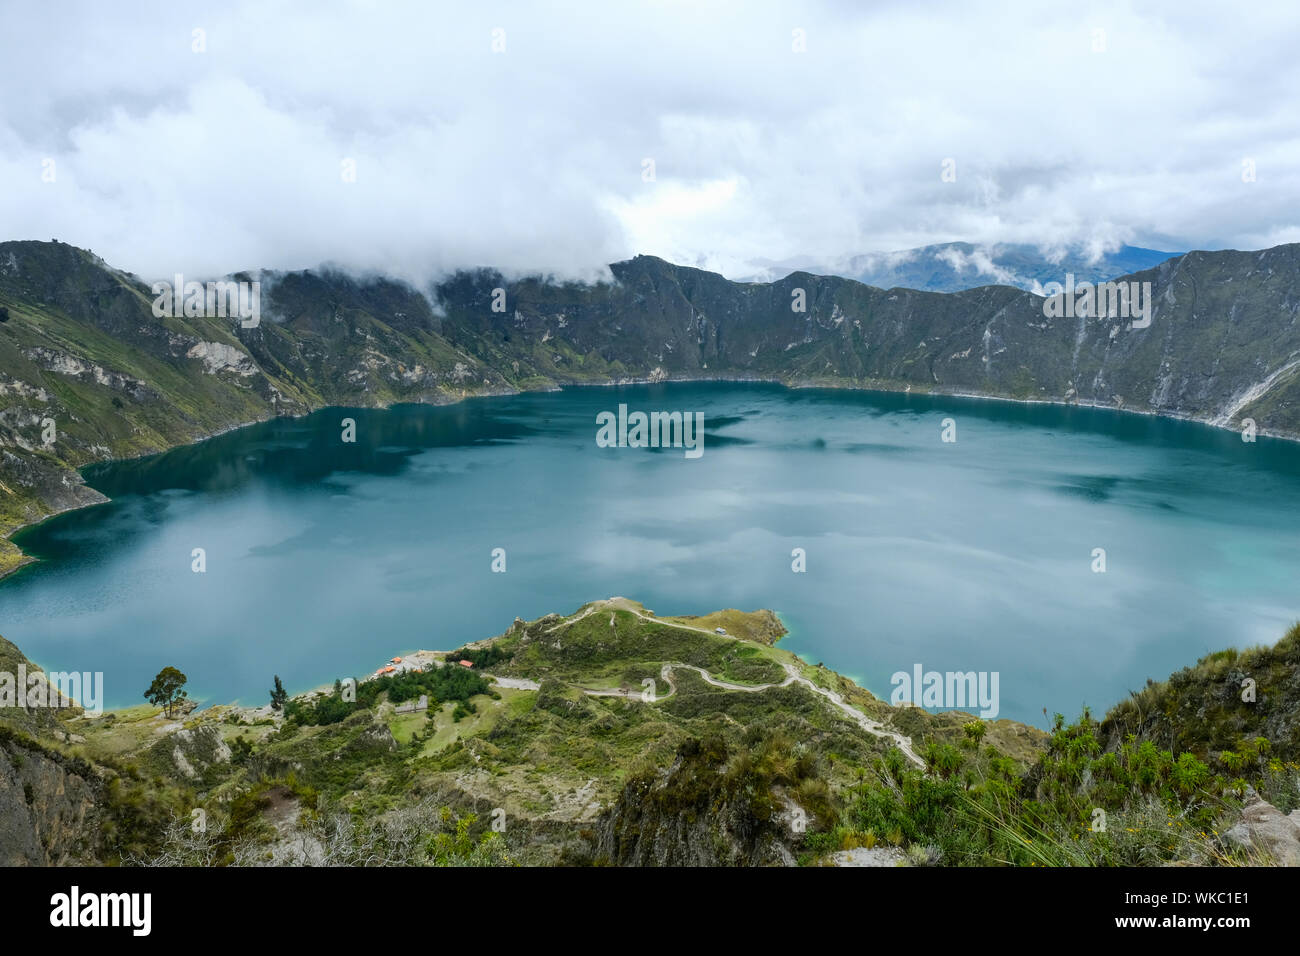 Lago de Quilatoa Pujil', cantón de la provincia de Cotopaxi, Ecuador. Es un Quilatoa lleno de agua de la caldera y el volcán más occidentales de los Andes Ecuatorianos. Foto de stock